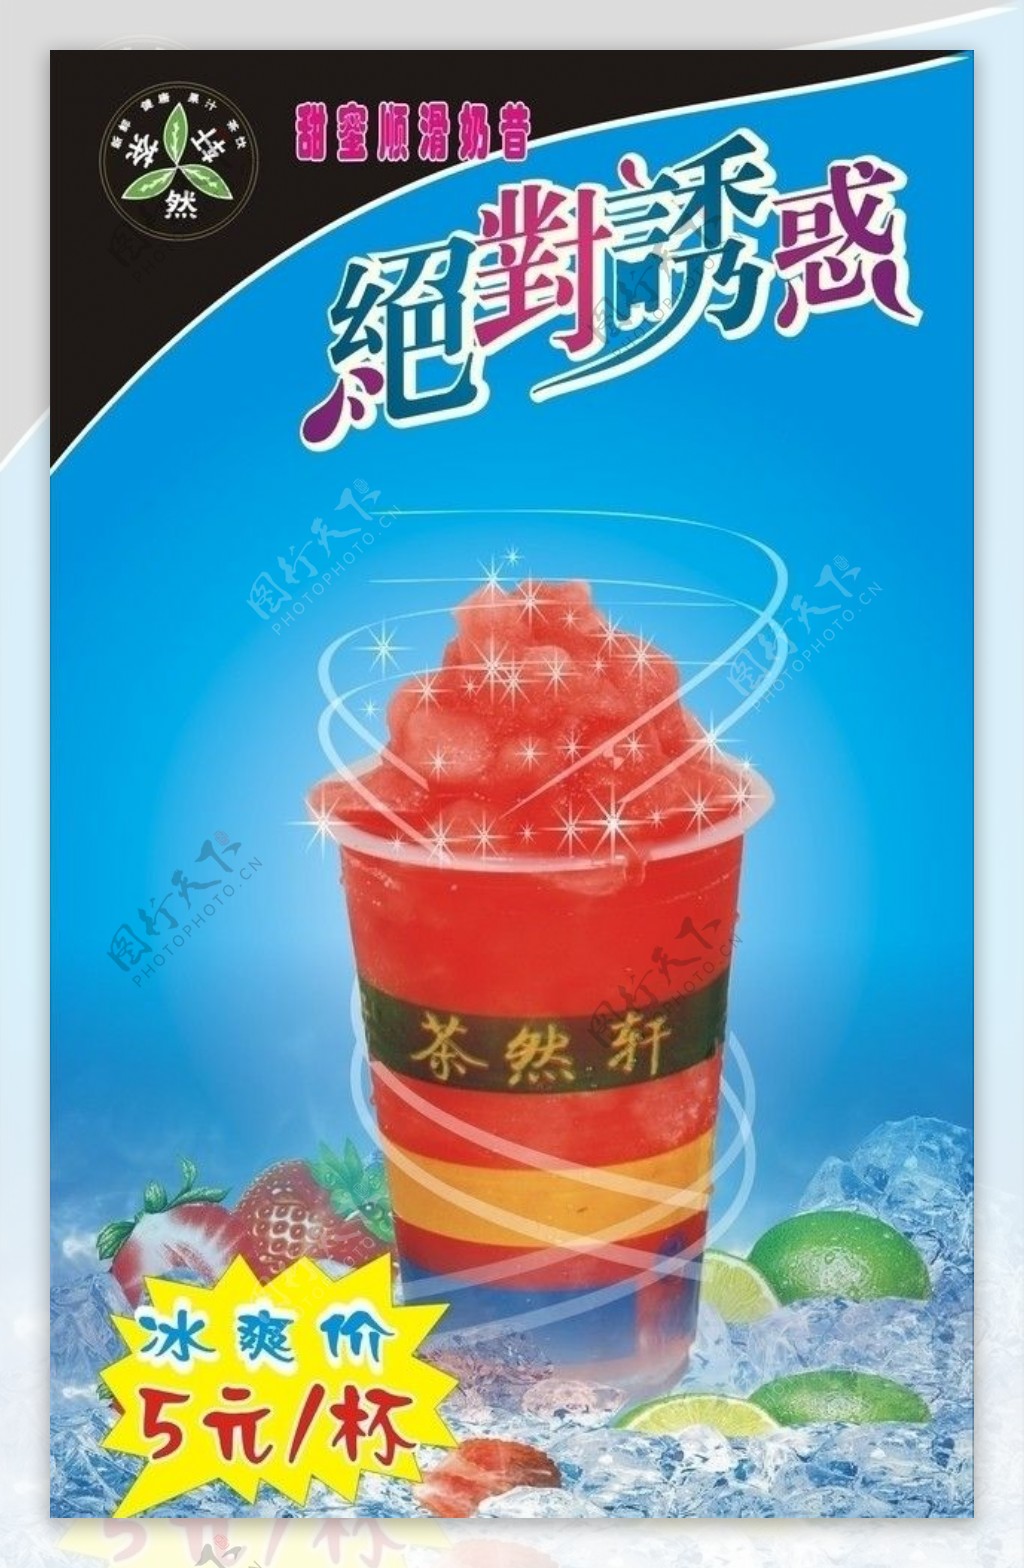 茶然轩奶茶店系列广告图片